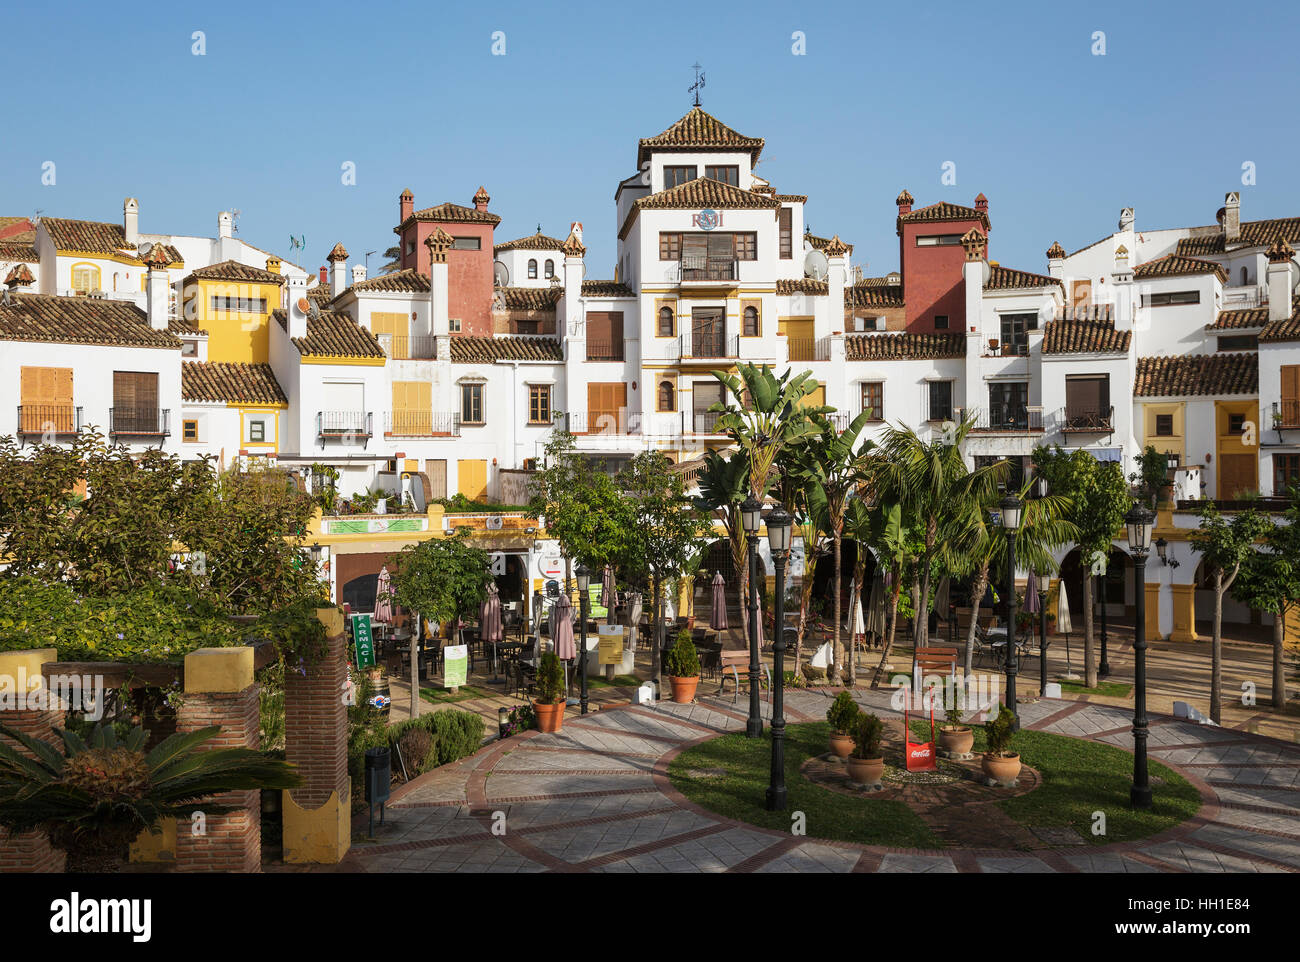 Andalusian architecture, La Alcaidesa, Cadiz province, Andalusia, Spain Stock Photo